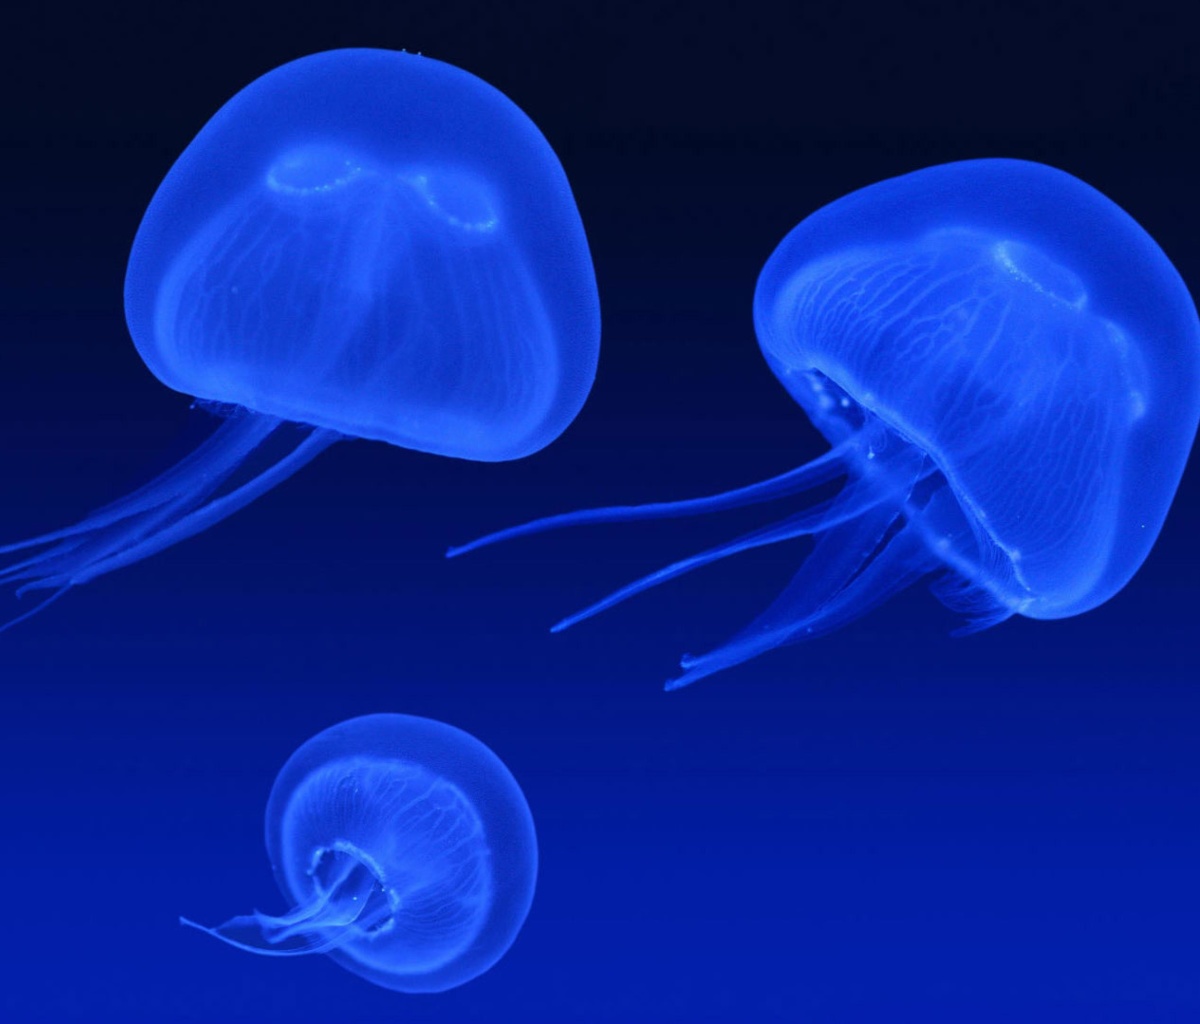 Neon box jellyfish screenshot #1 1200x1024